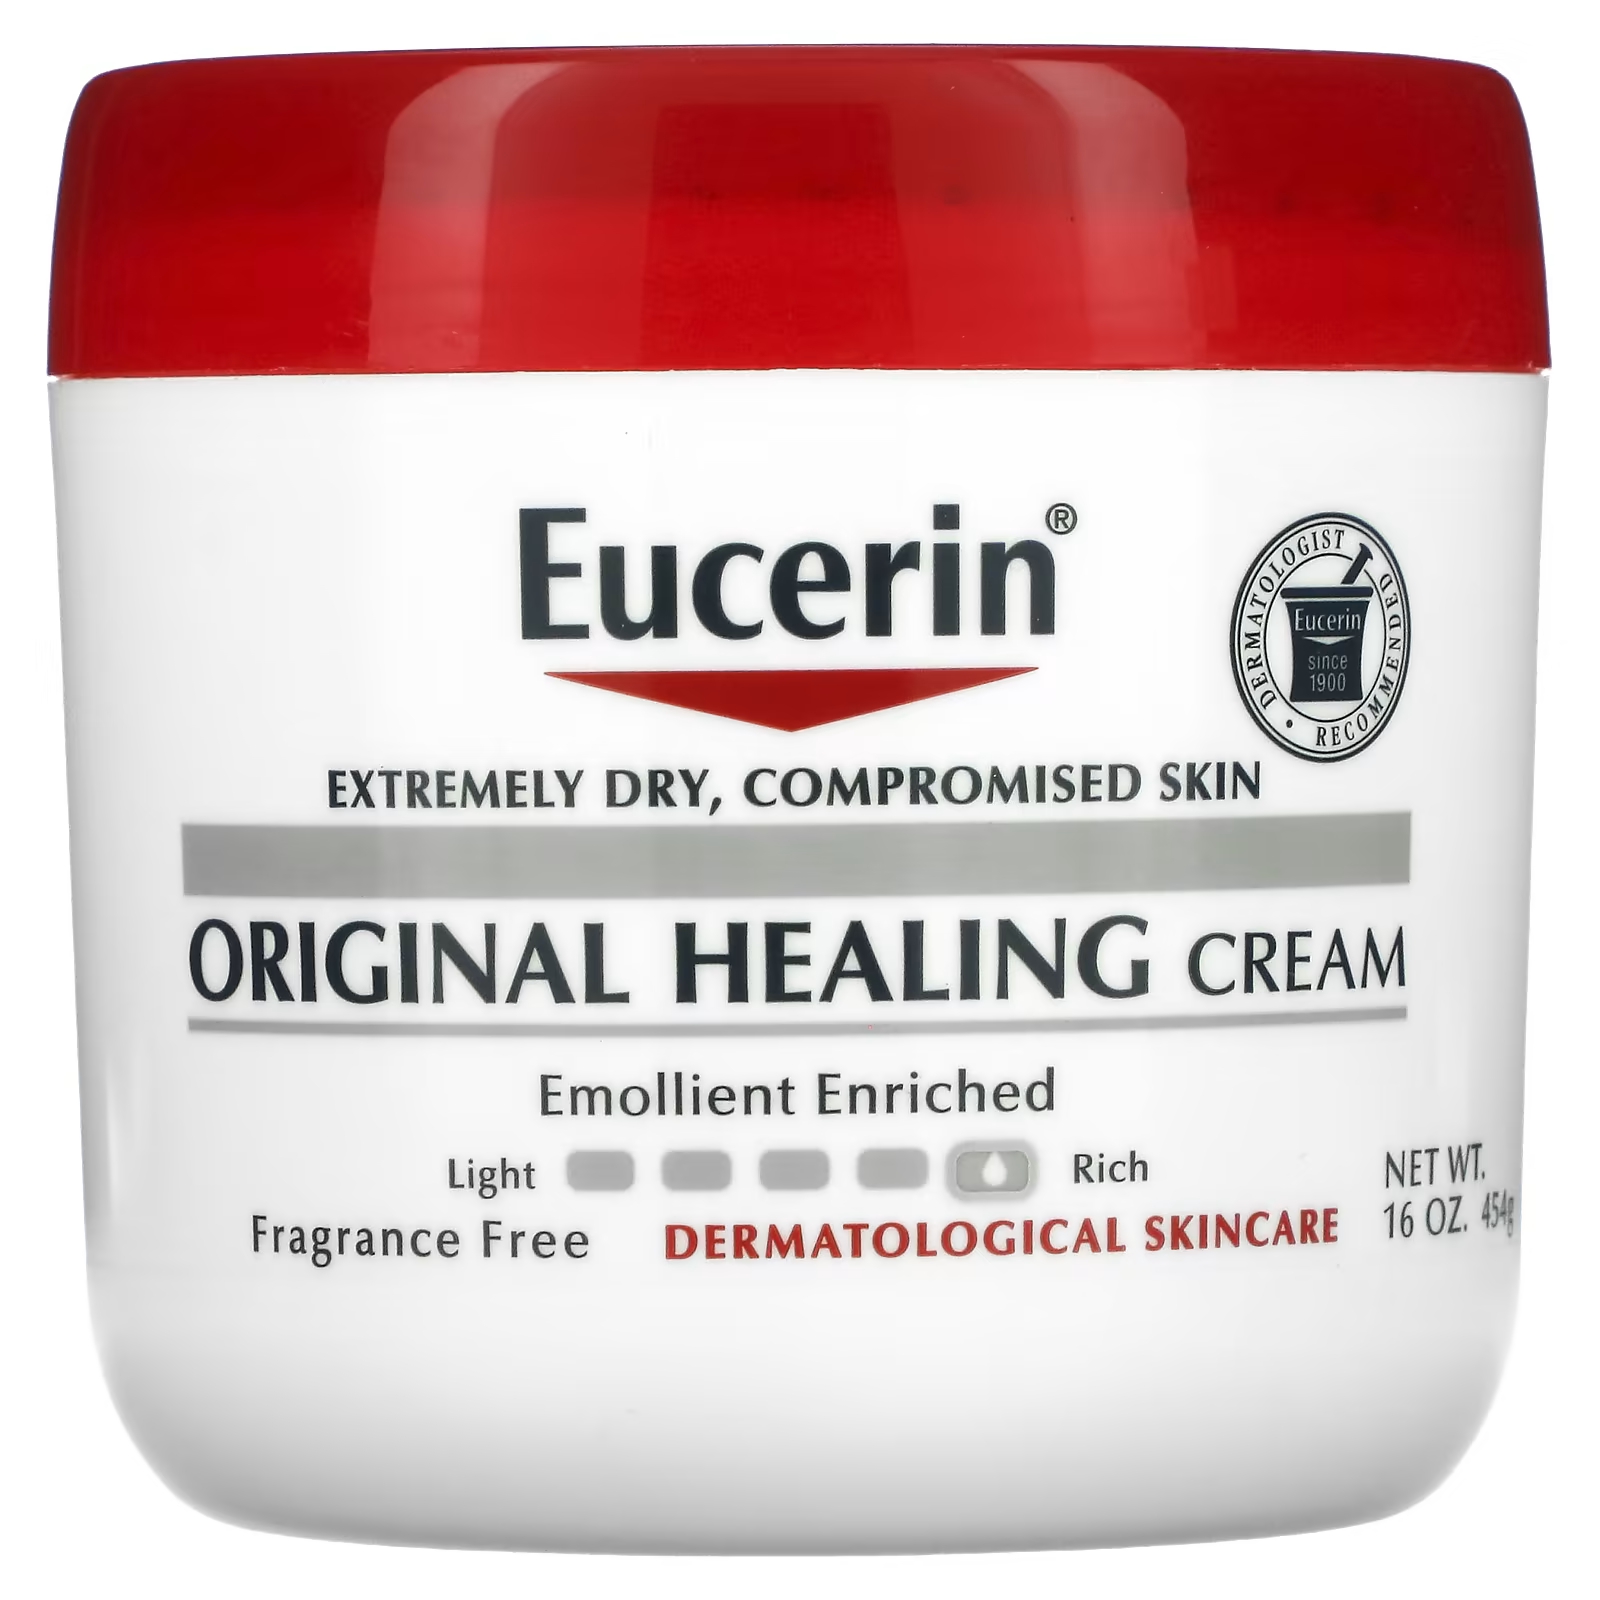 Eucerin Original Healing Cream для очень сухой проблемной кожи, без ароматизаторов, 16 унций (454 г) eucerin original healing rich cream 16 oz 454g